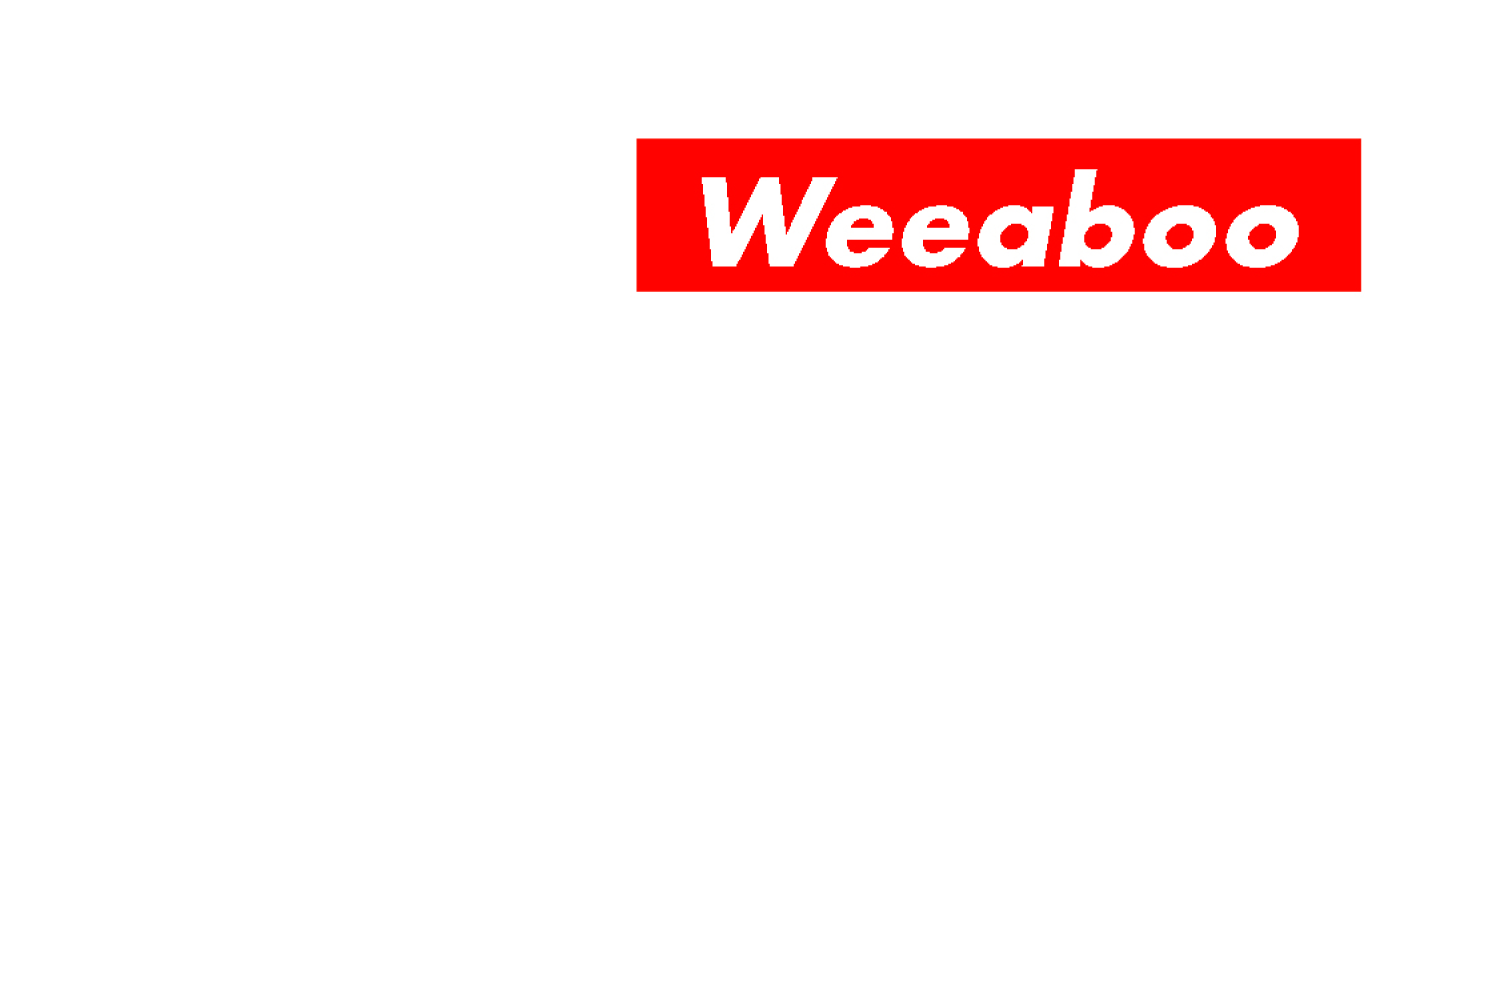 Weeaboo